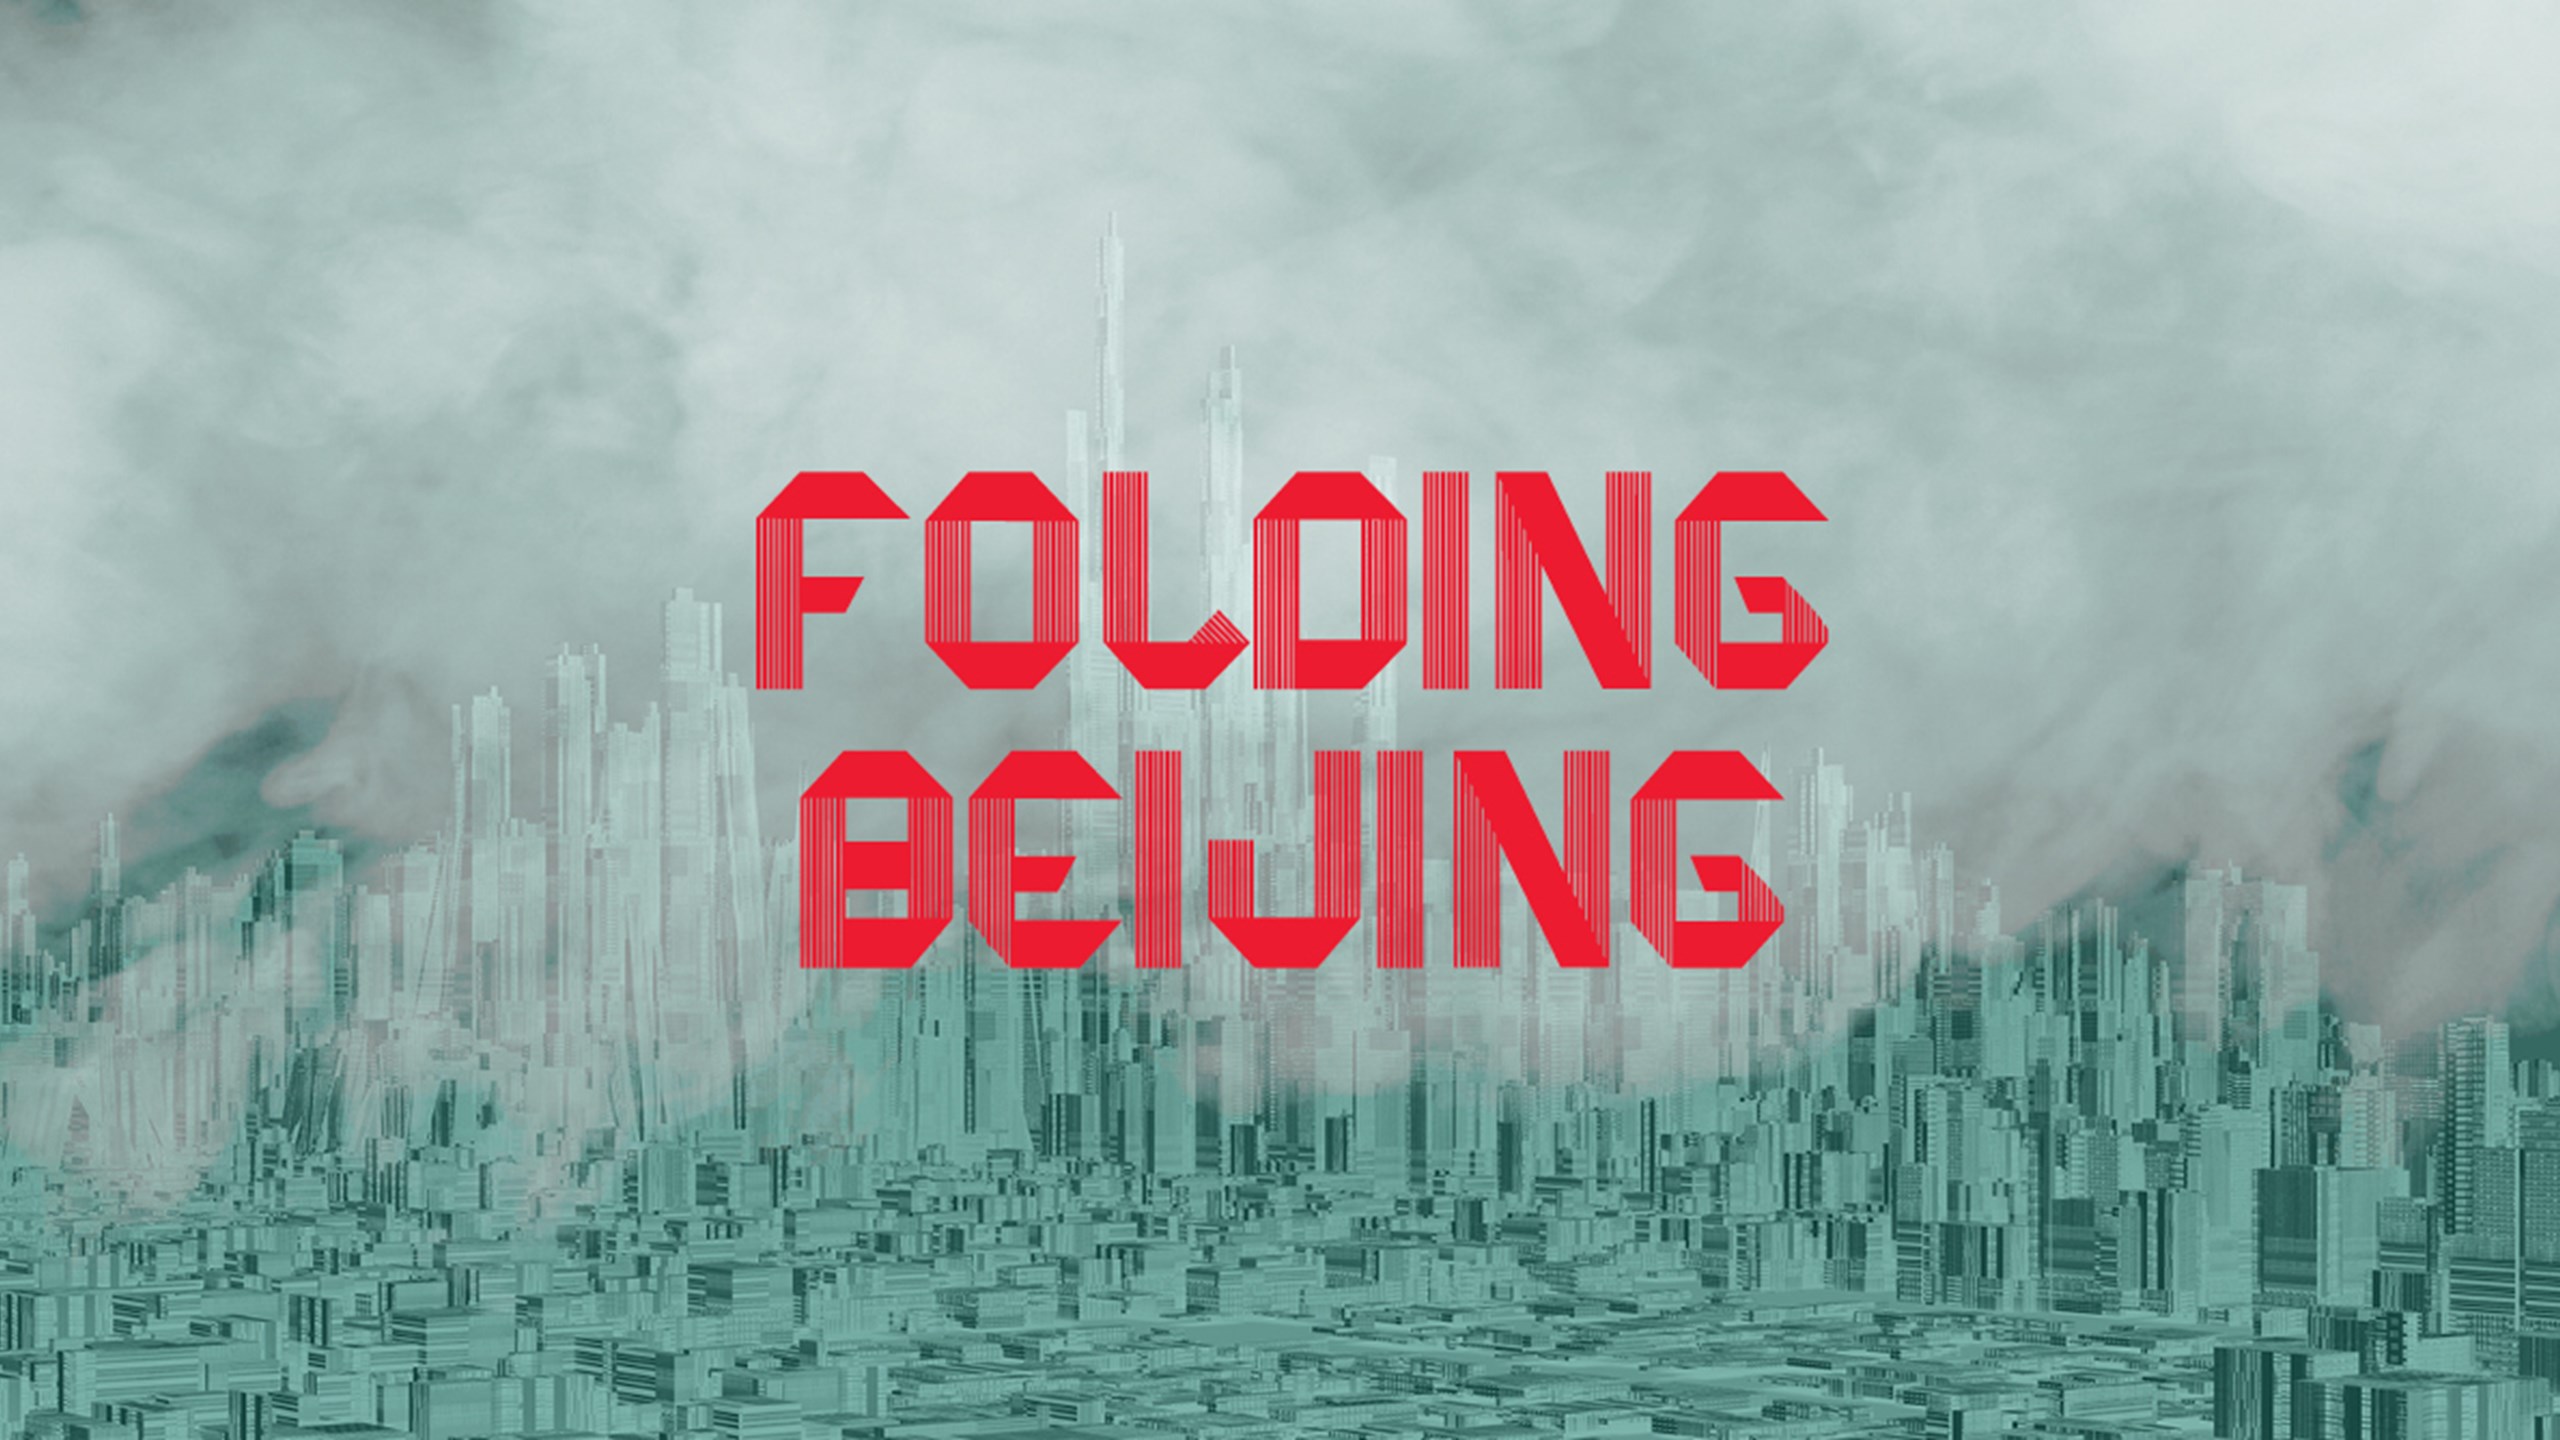 FOLDING BEIJING: A READING